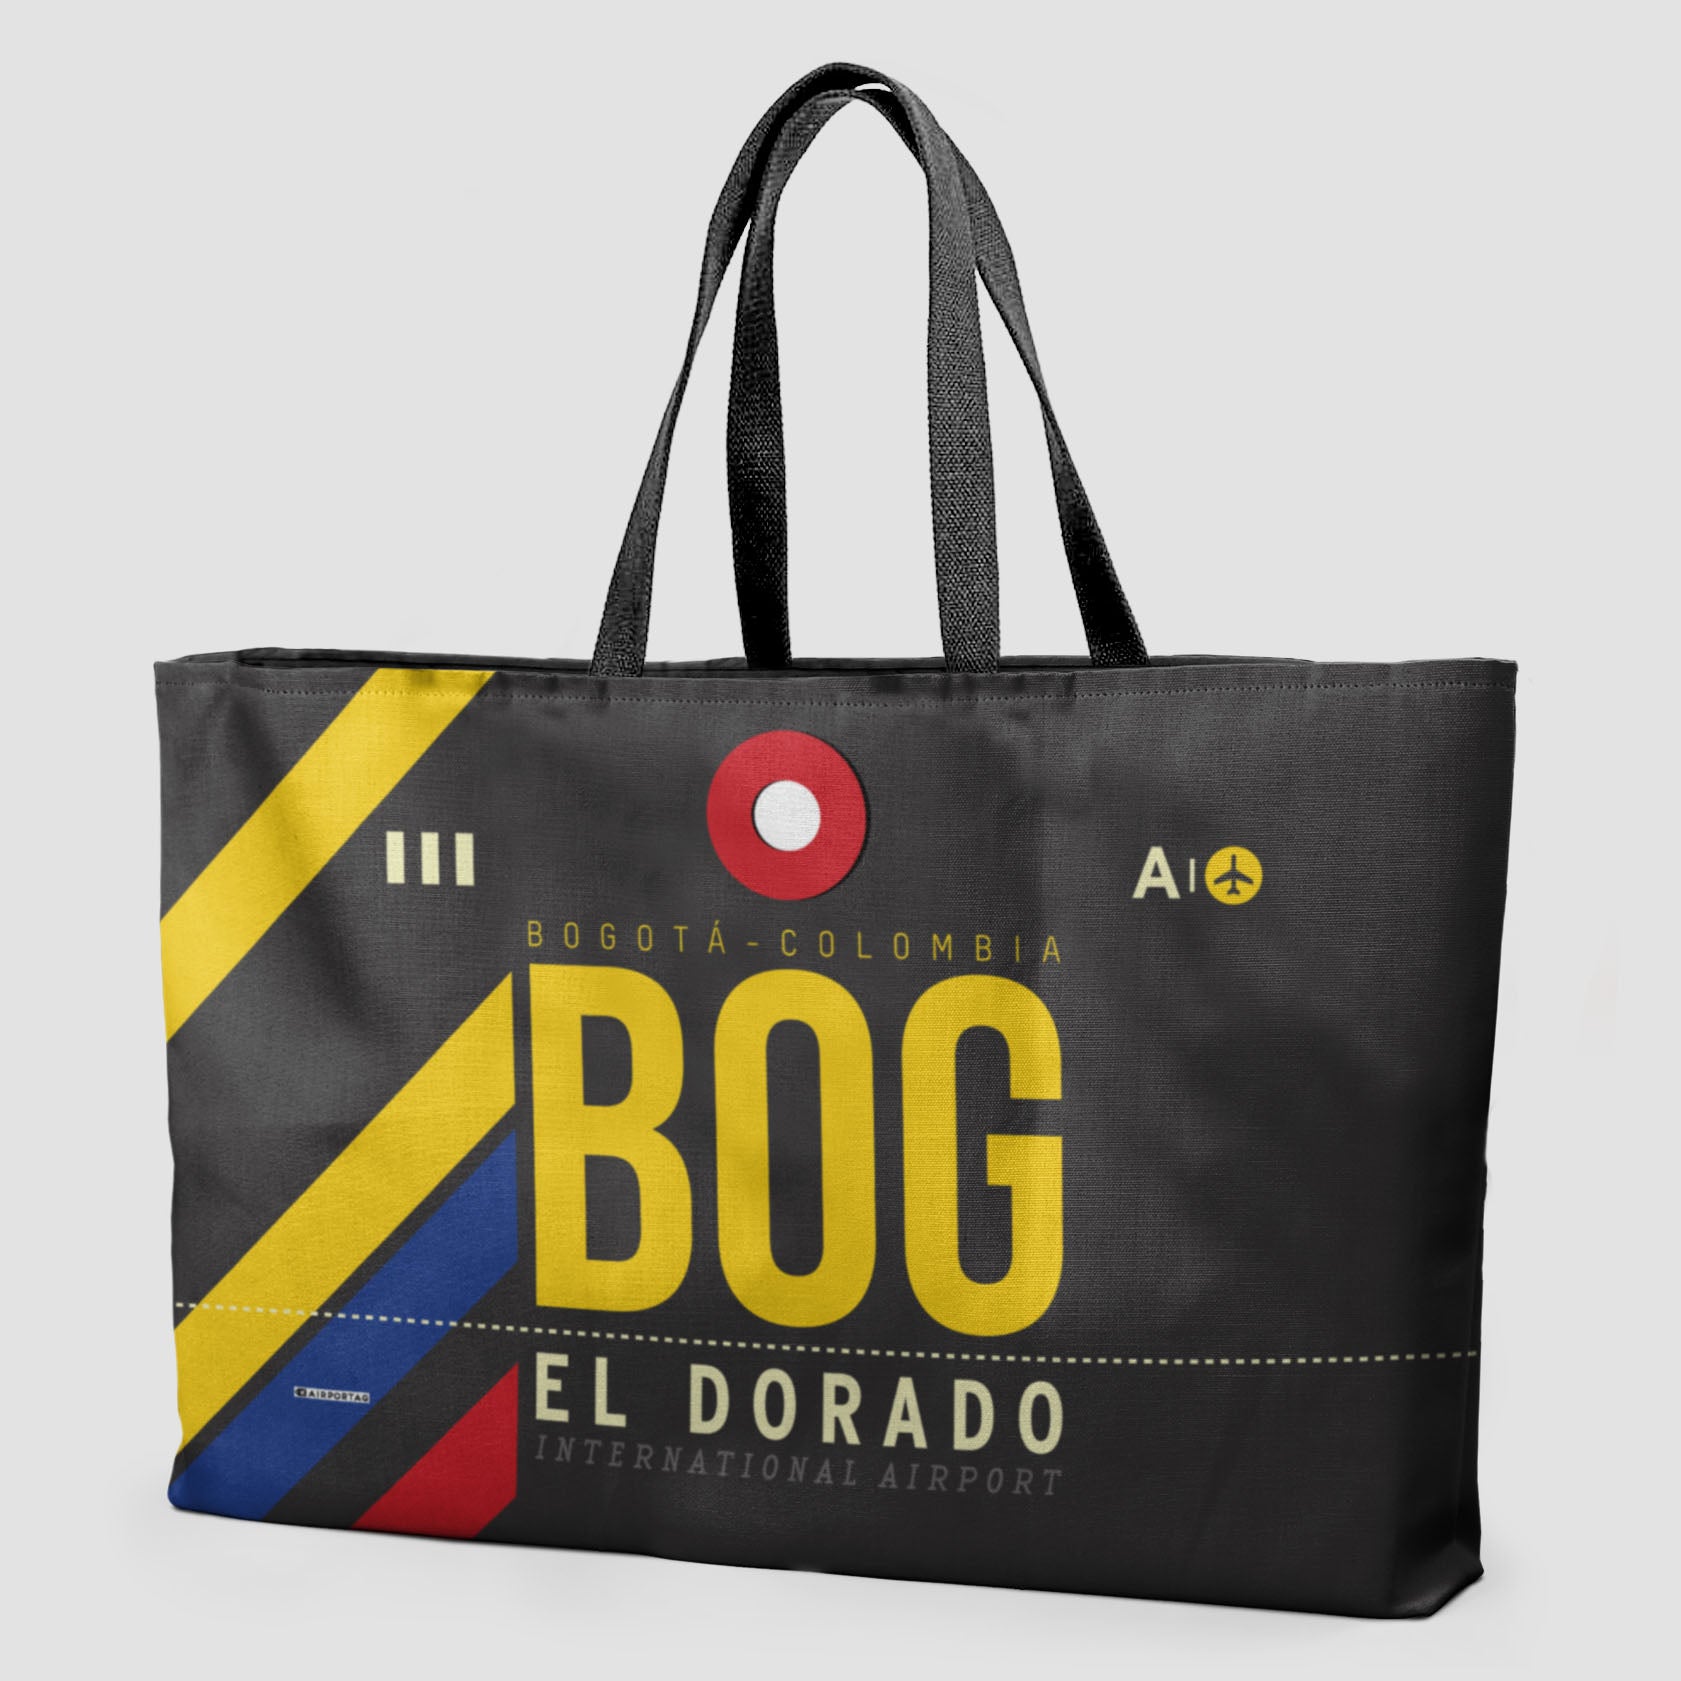 BOG - Weekender Bag - Airportag